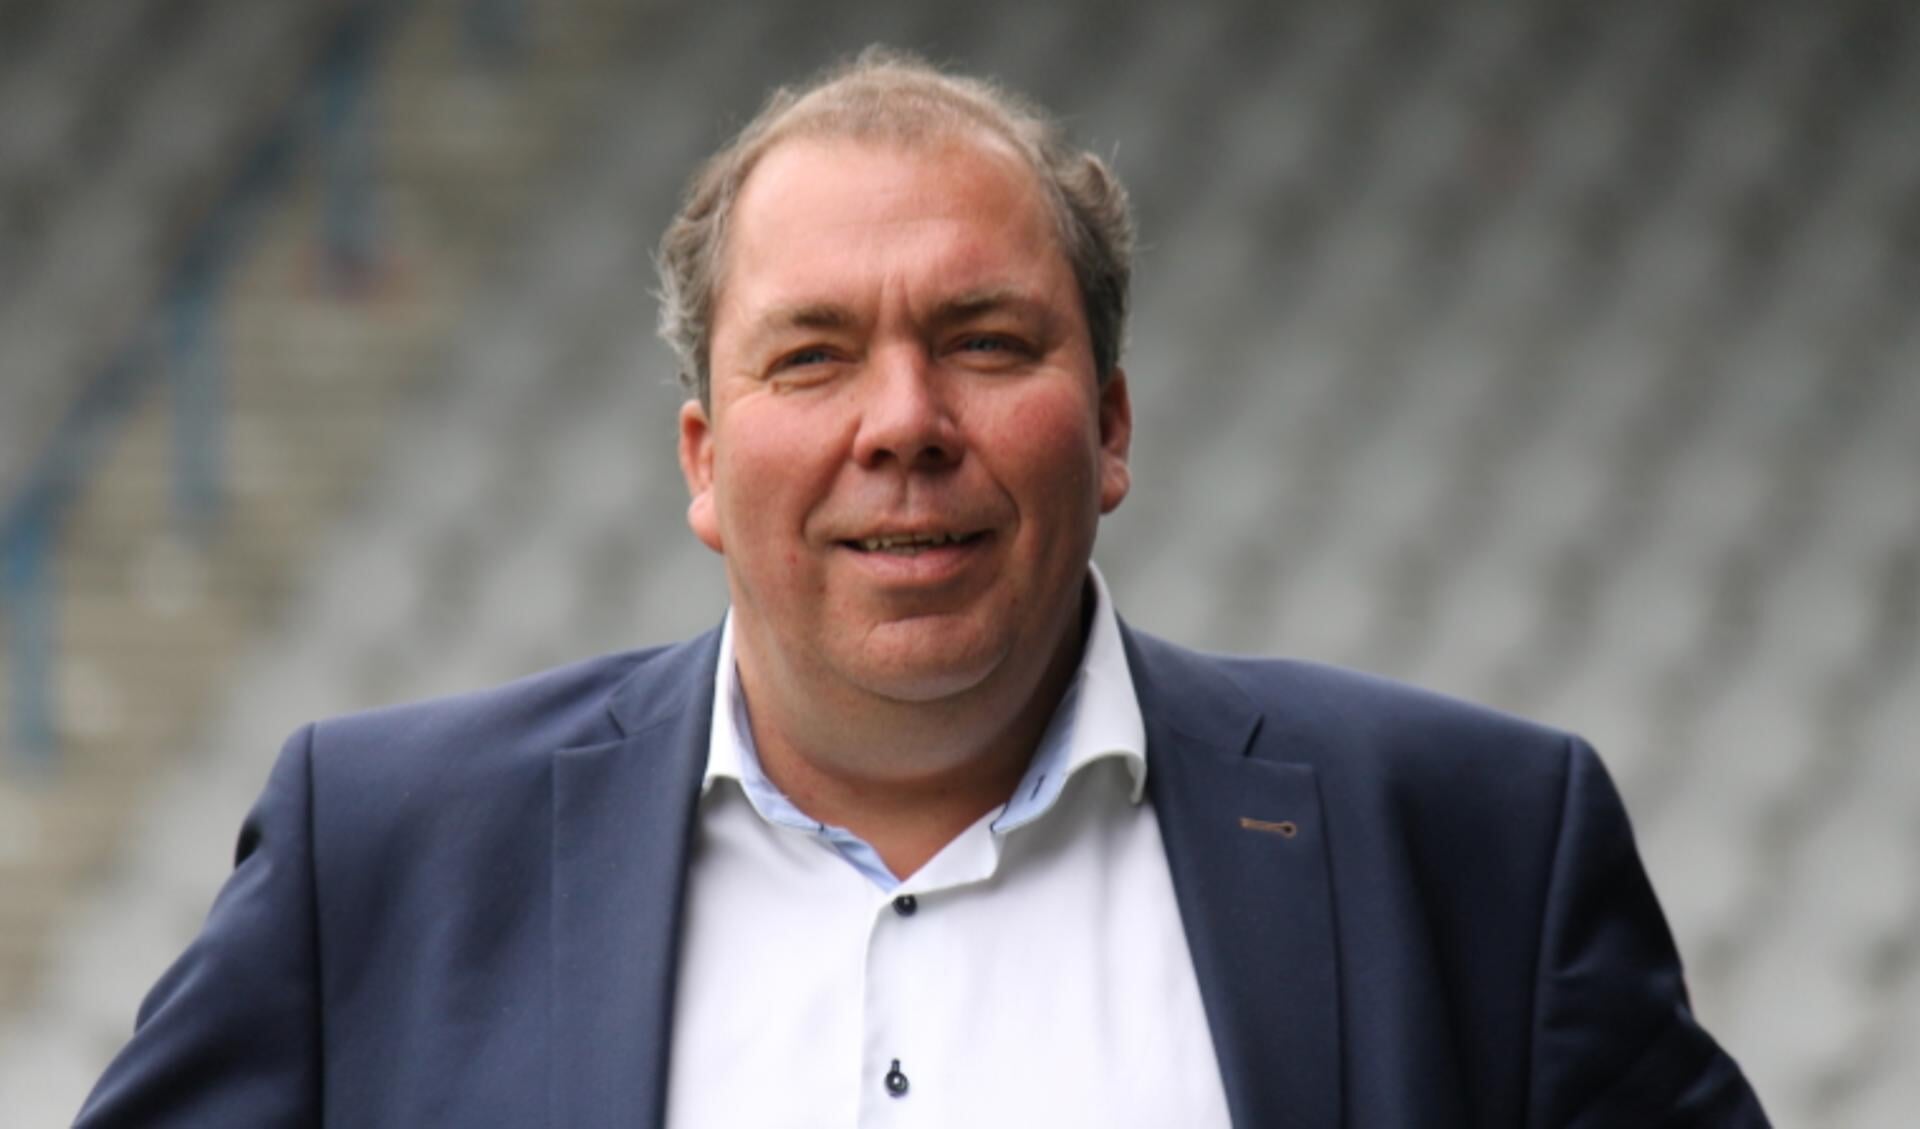 Hans Martijn Ostendorp tot formateur benoemd. Foto: PR